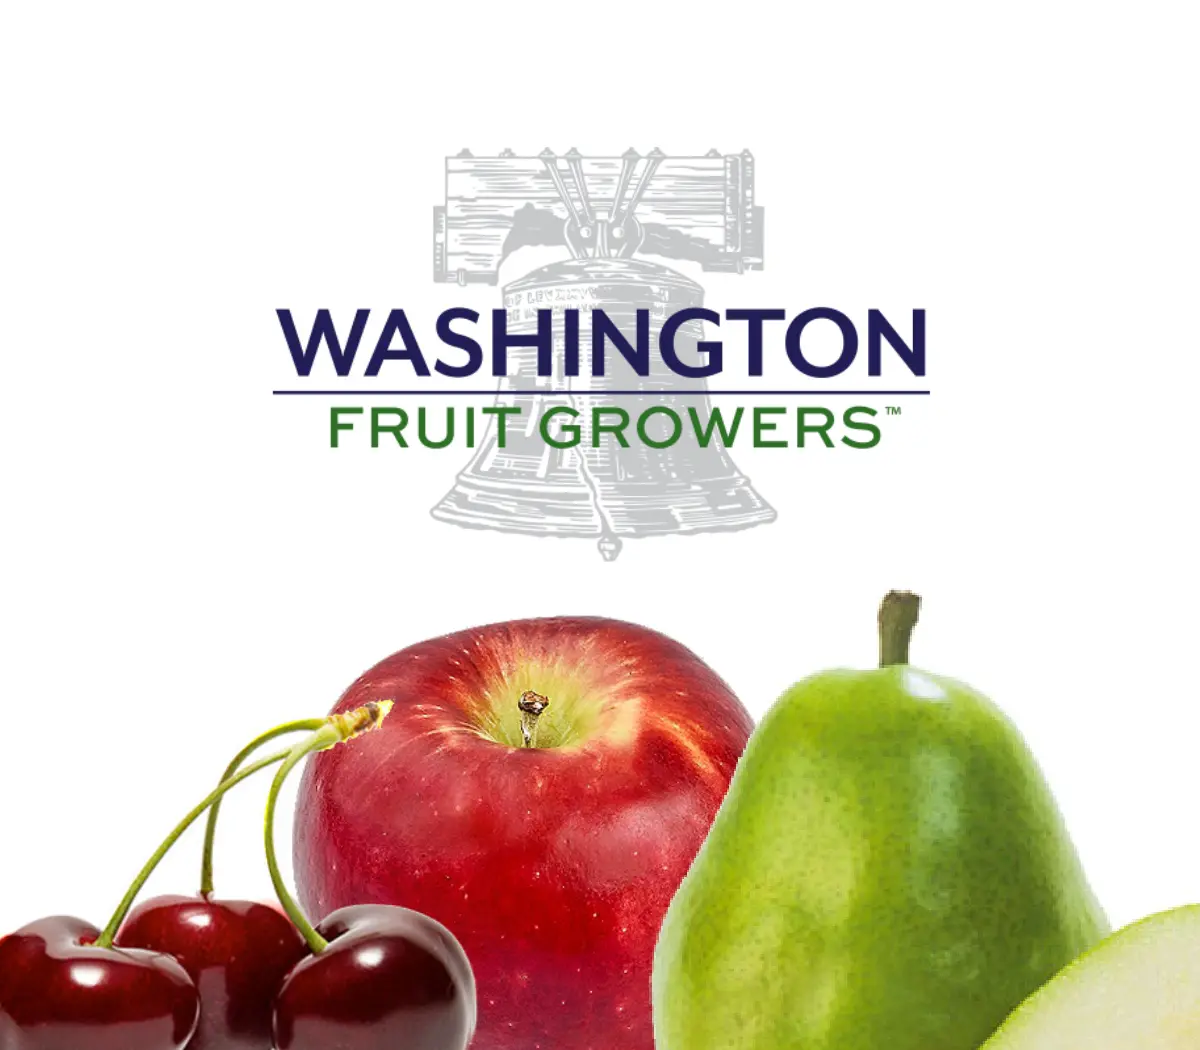 Washington Fruit Growers